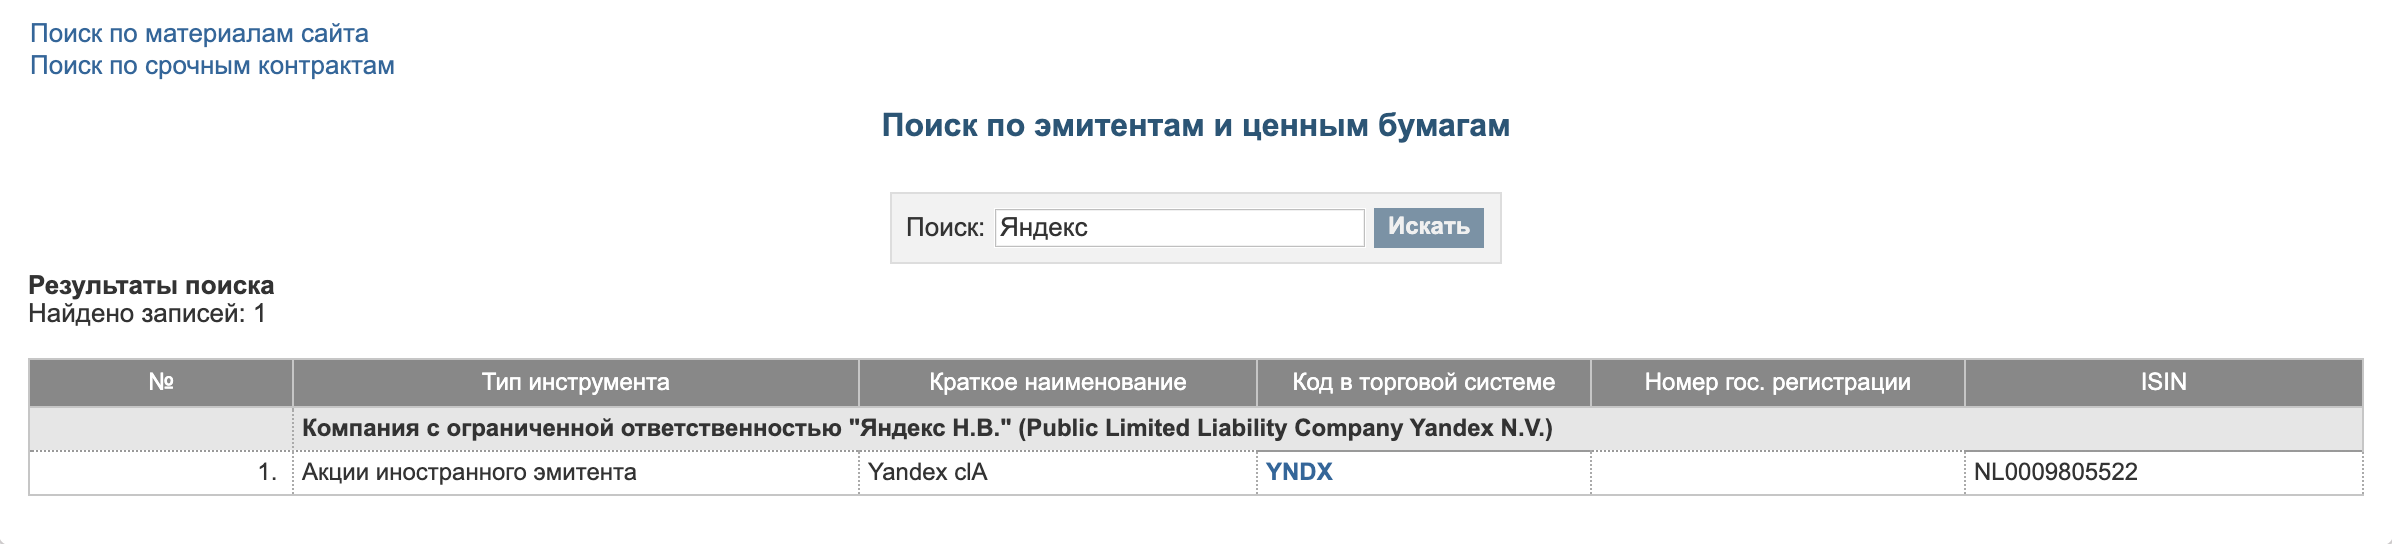 Идентификатор Яндекса начинается с букв NL, а биржа сразу предупреждает, что это акции иностранного эмитента